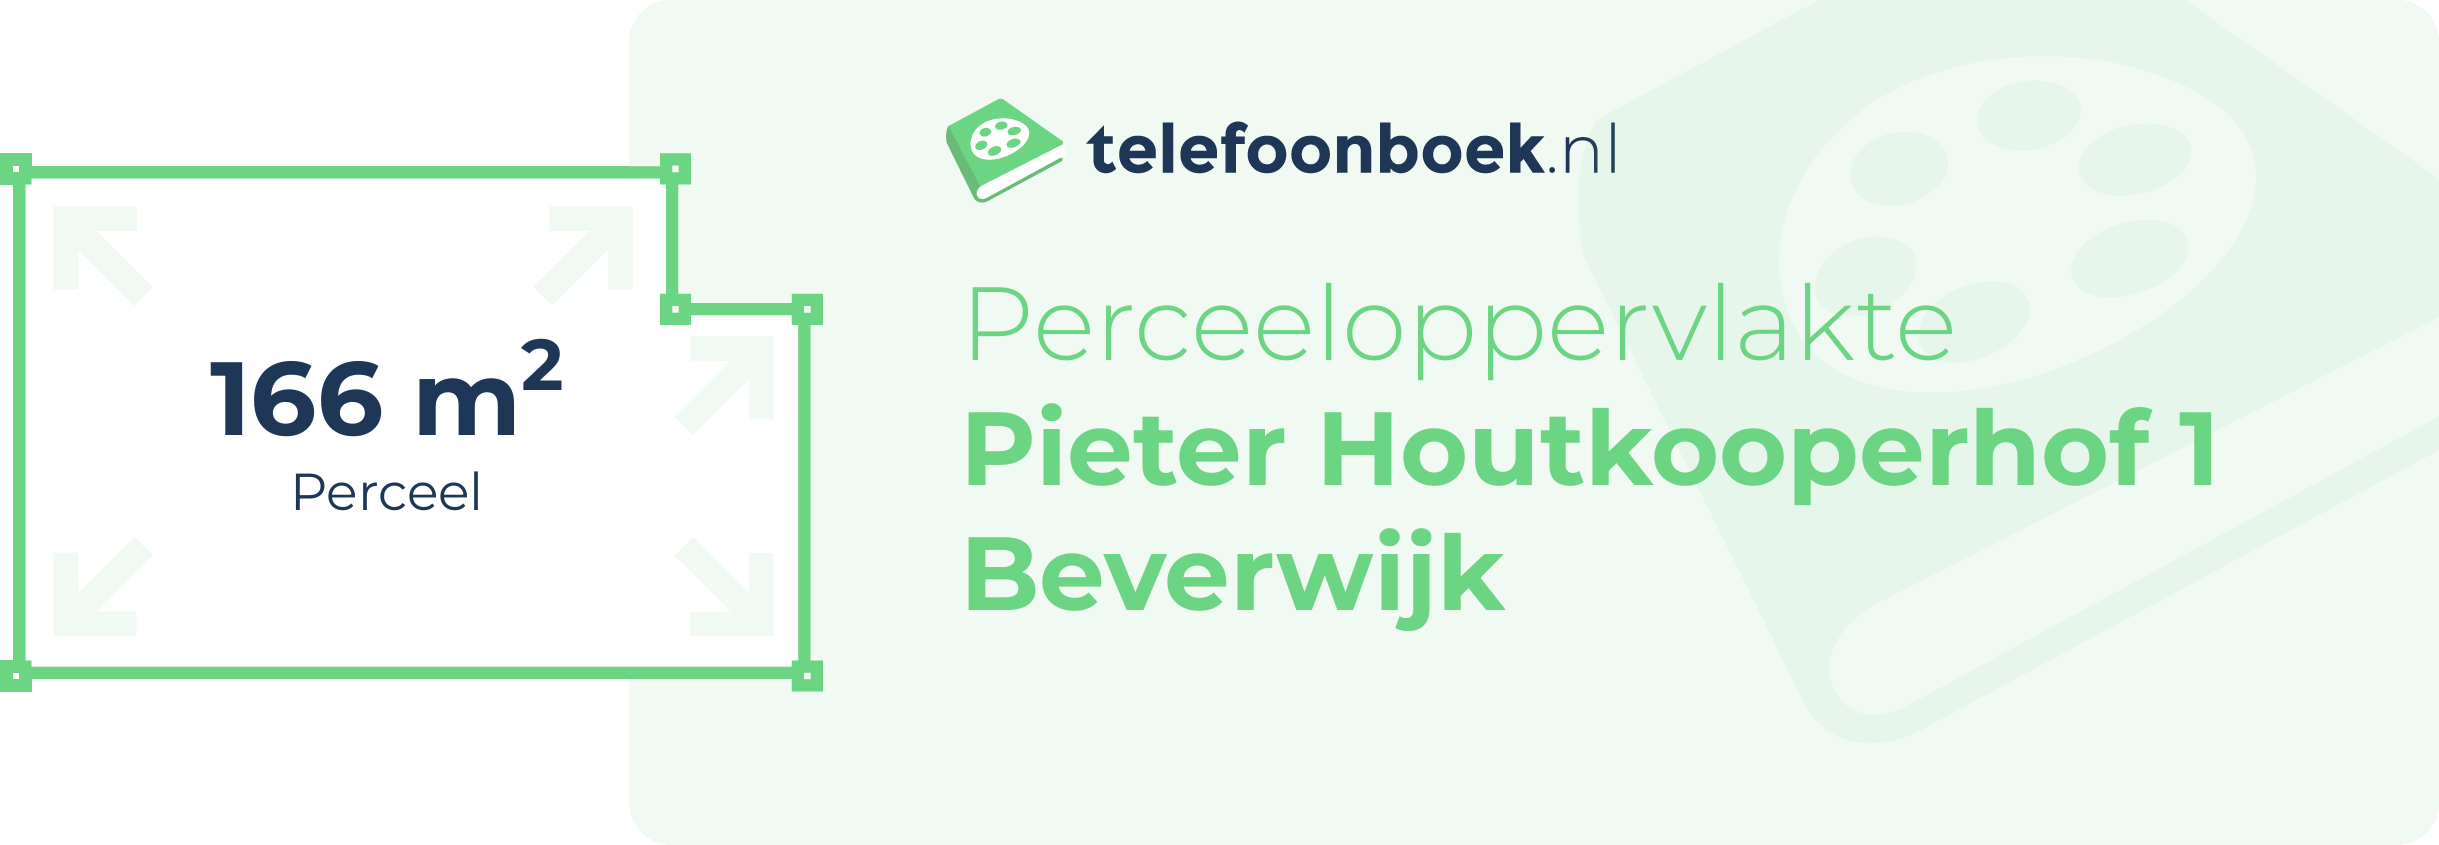 Perceeloppervlakte Pieter Houtkooperhof 1 Beverwijk